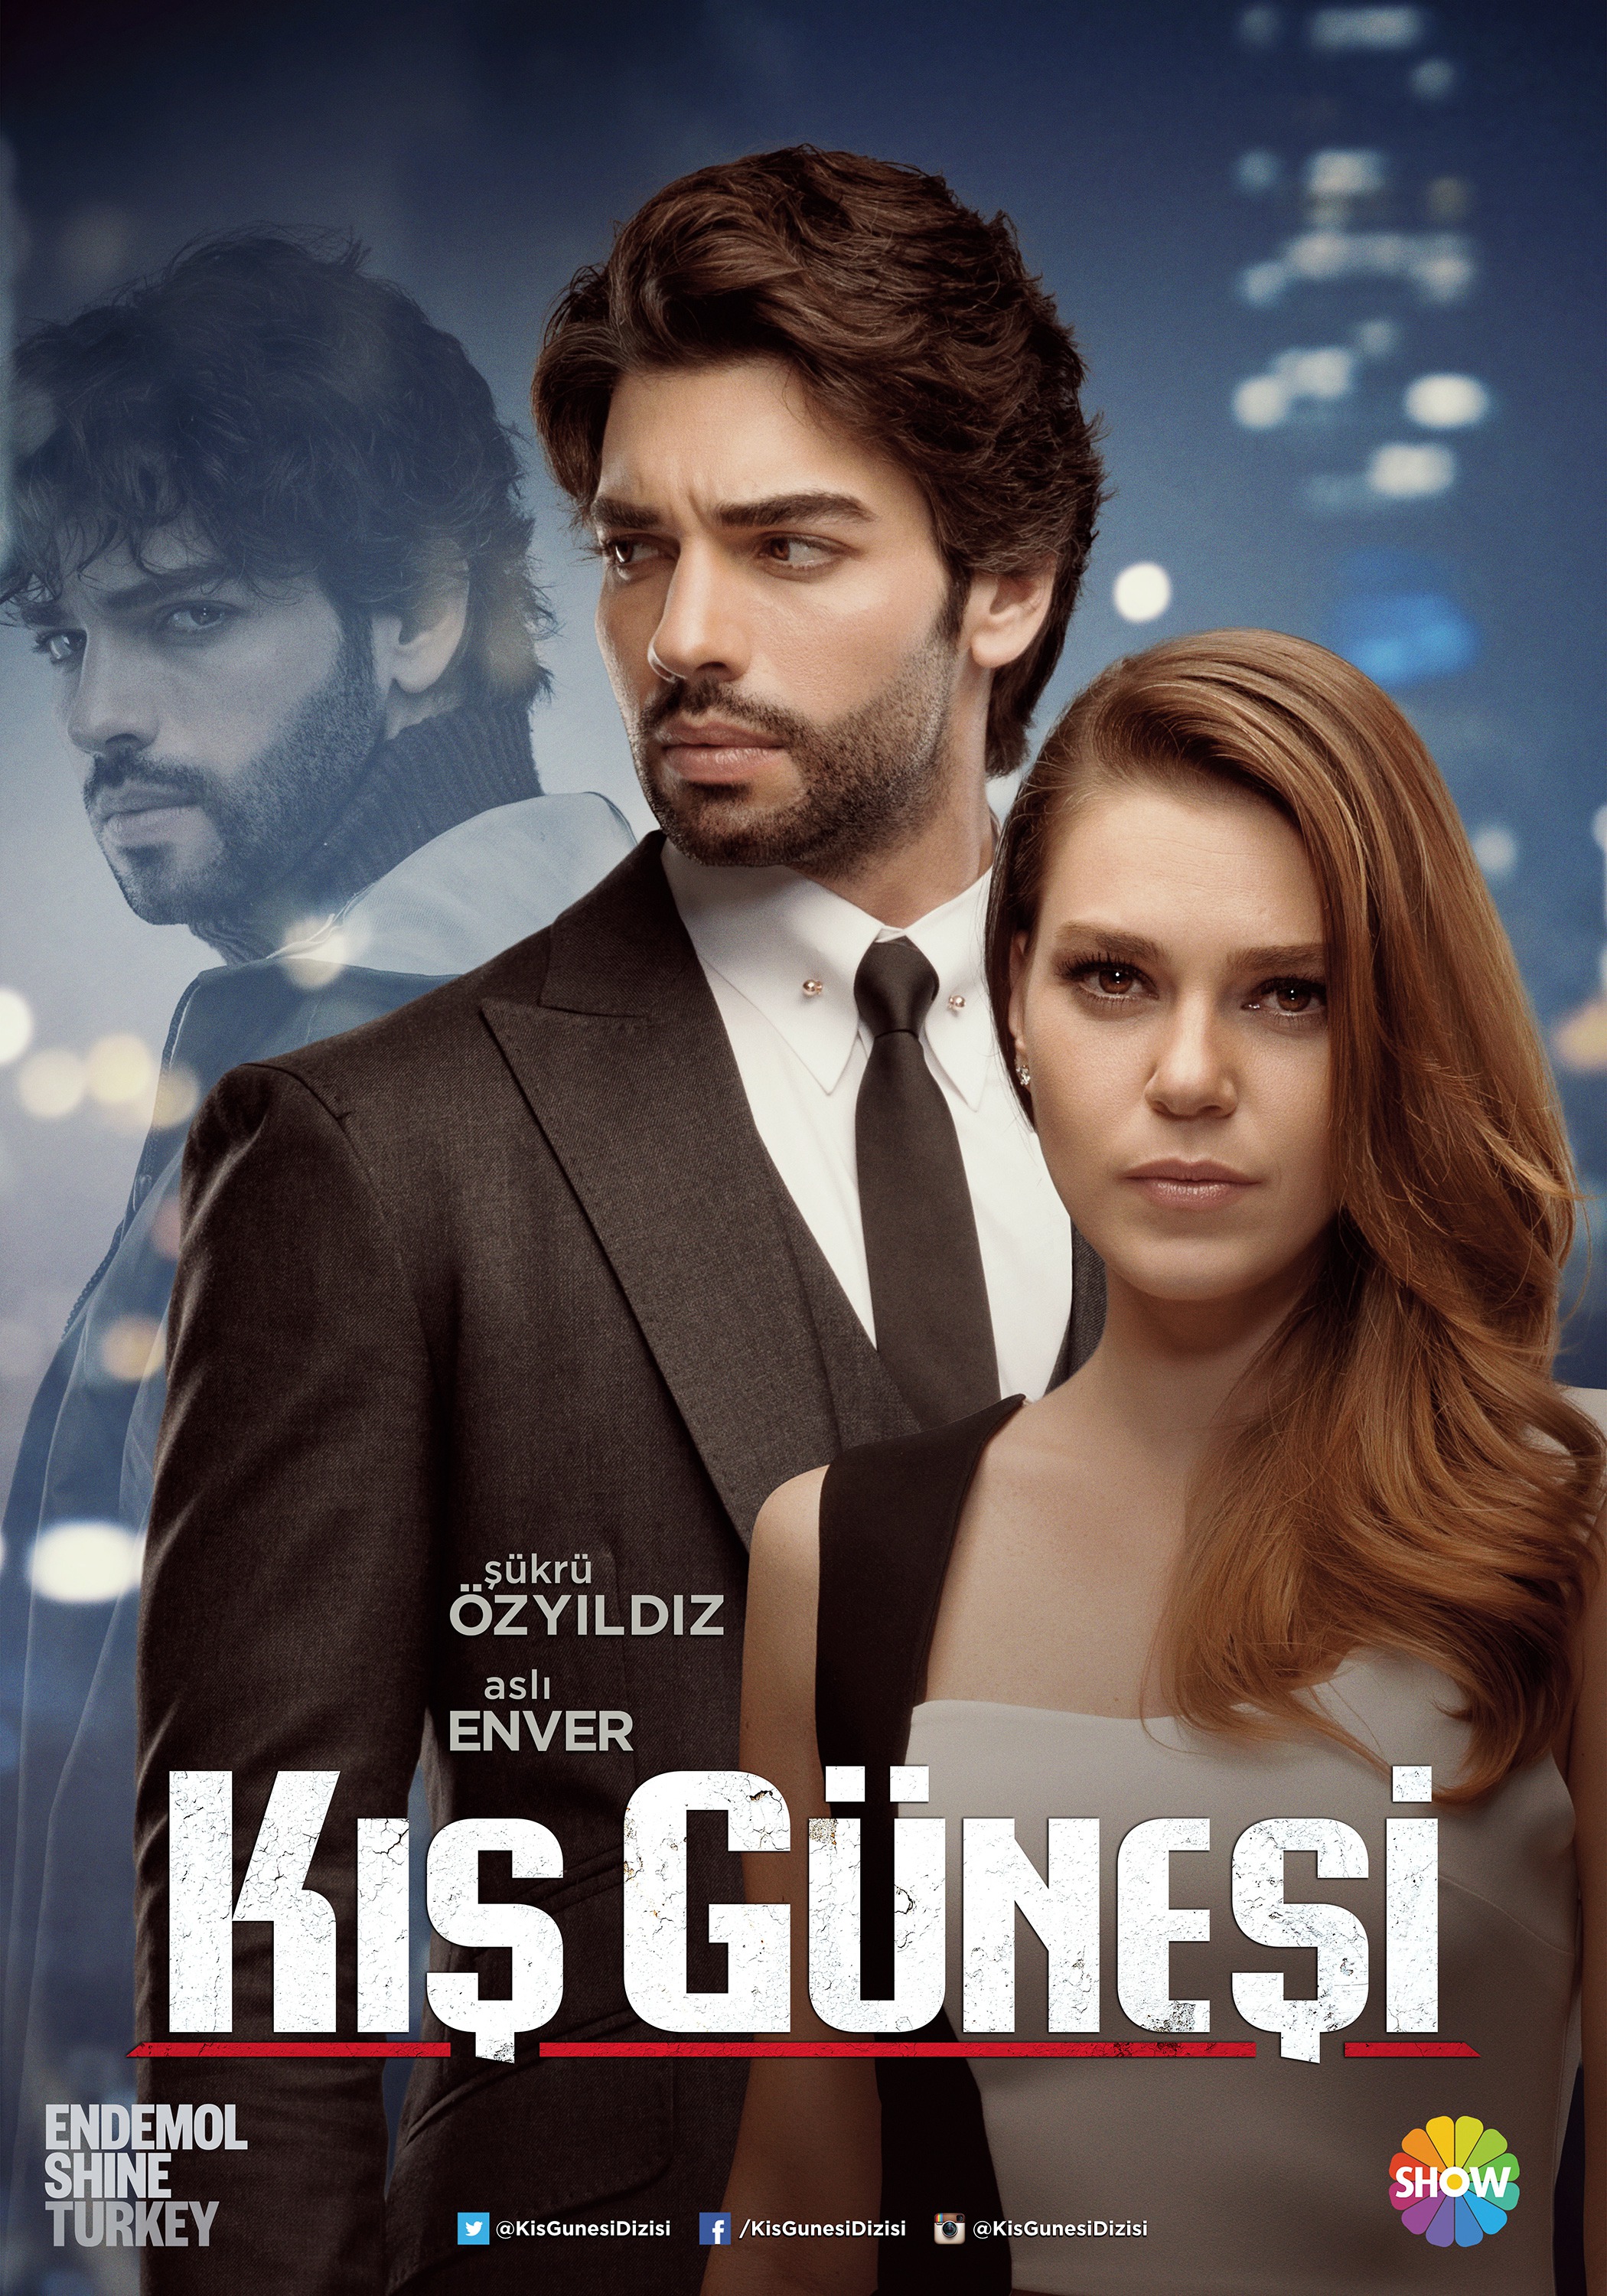 Mega Sized TV Poster Image for Kis Gunesi 